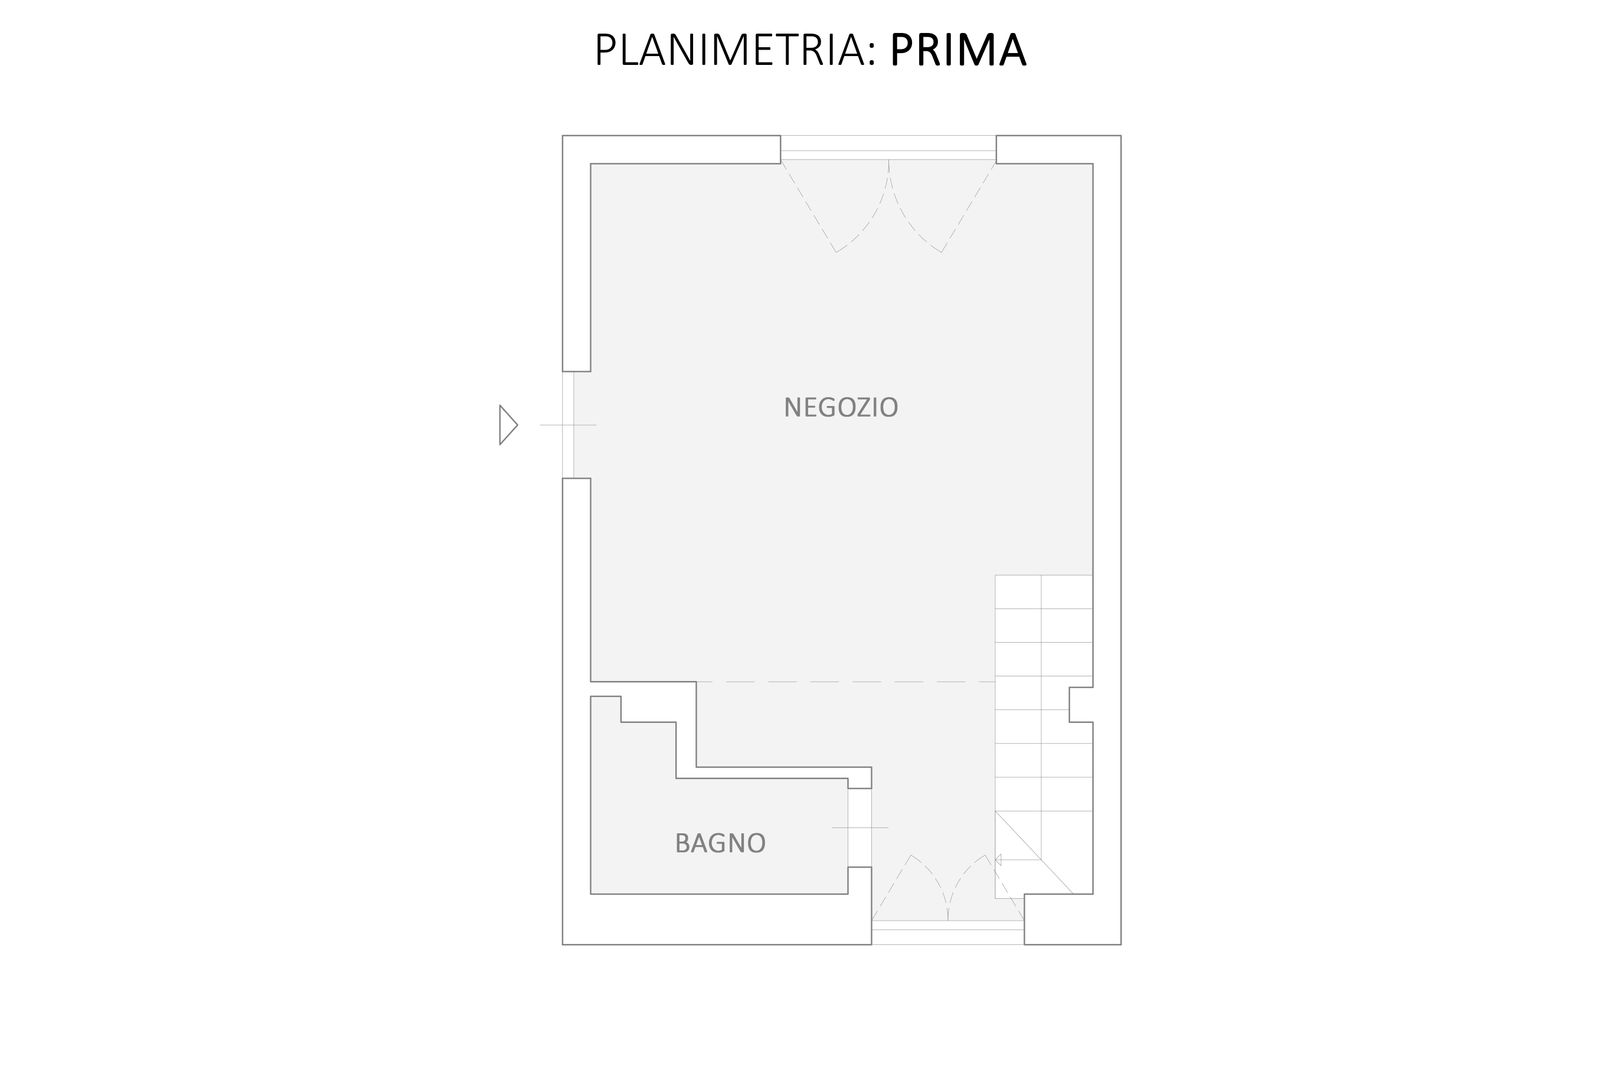 Planimetria: Prima GruppoTre Architetti